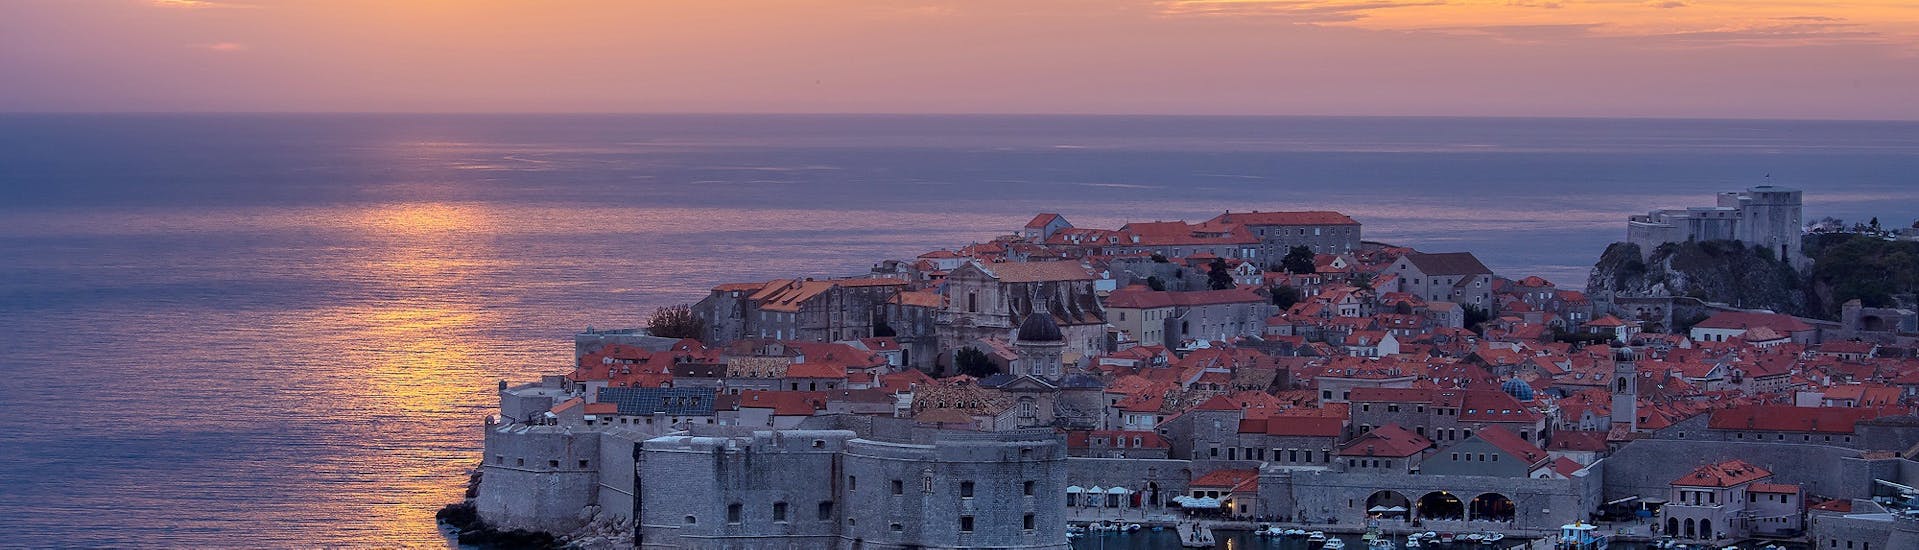 Wunderschöne Landschaft des Hafens von Dubrovnik während der Bootstour bei Sonnenuntergang ab Dubrovnik mit Marinero Dubrovnik.